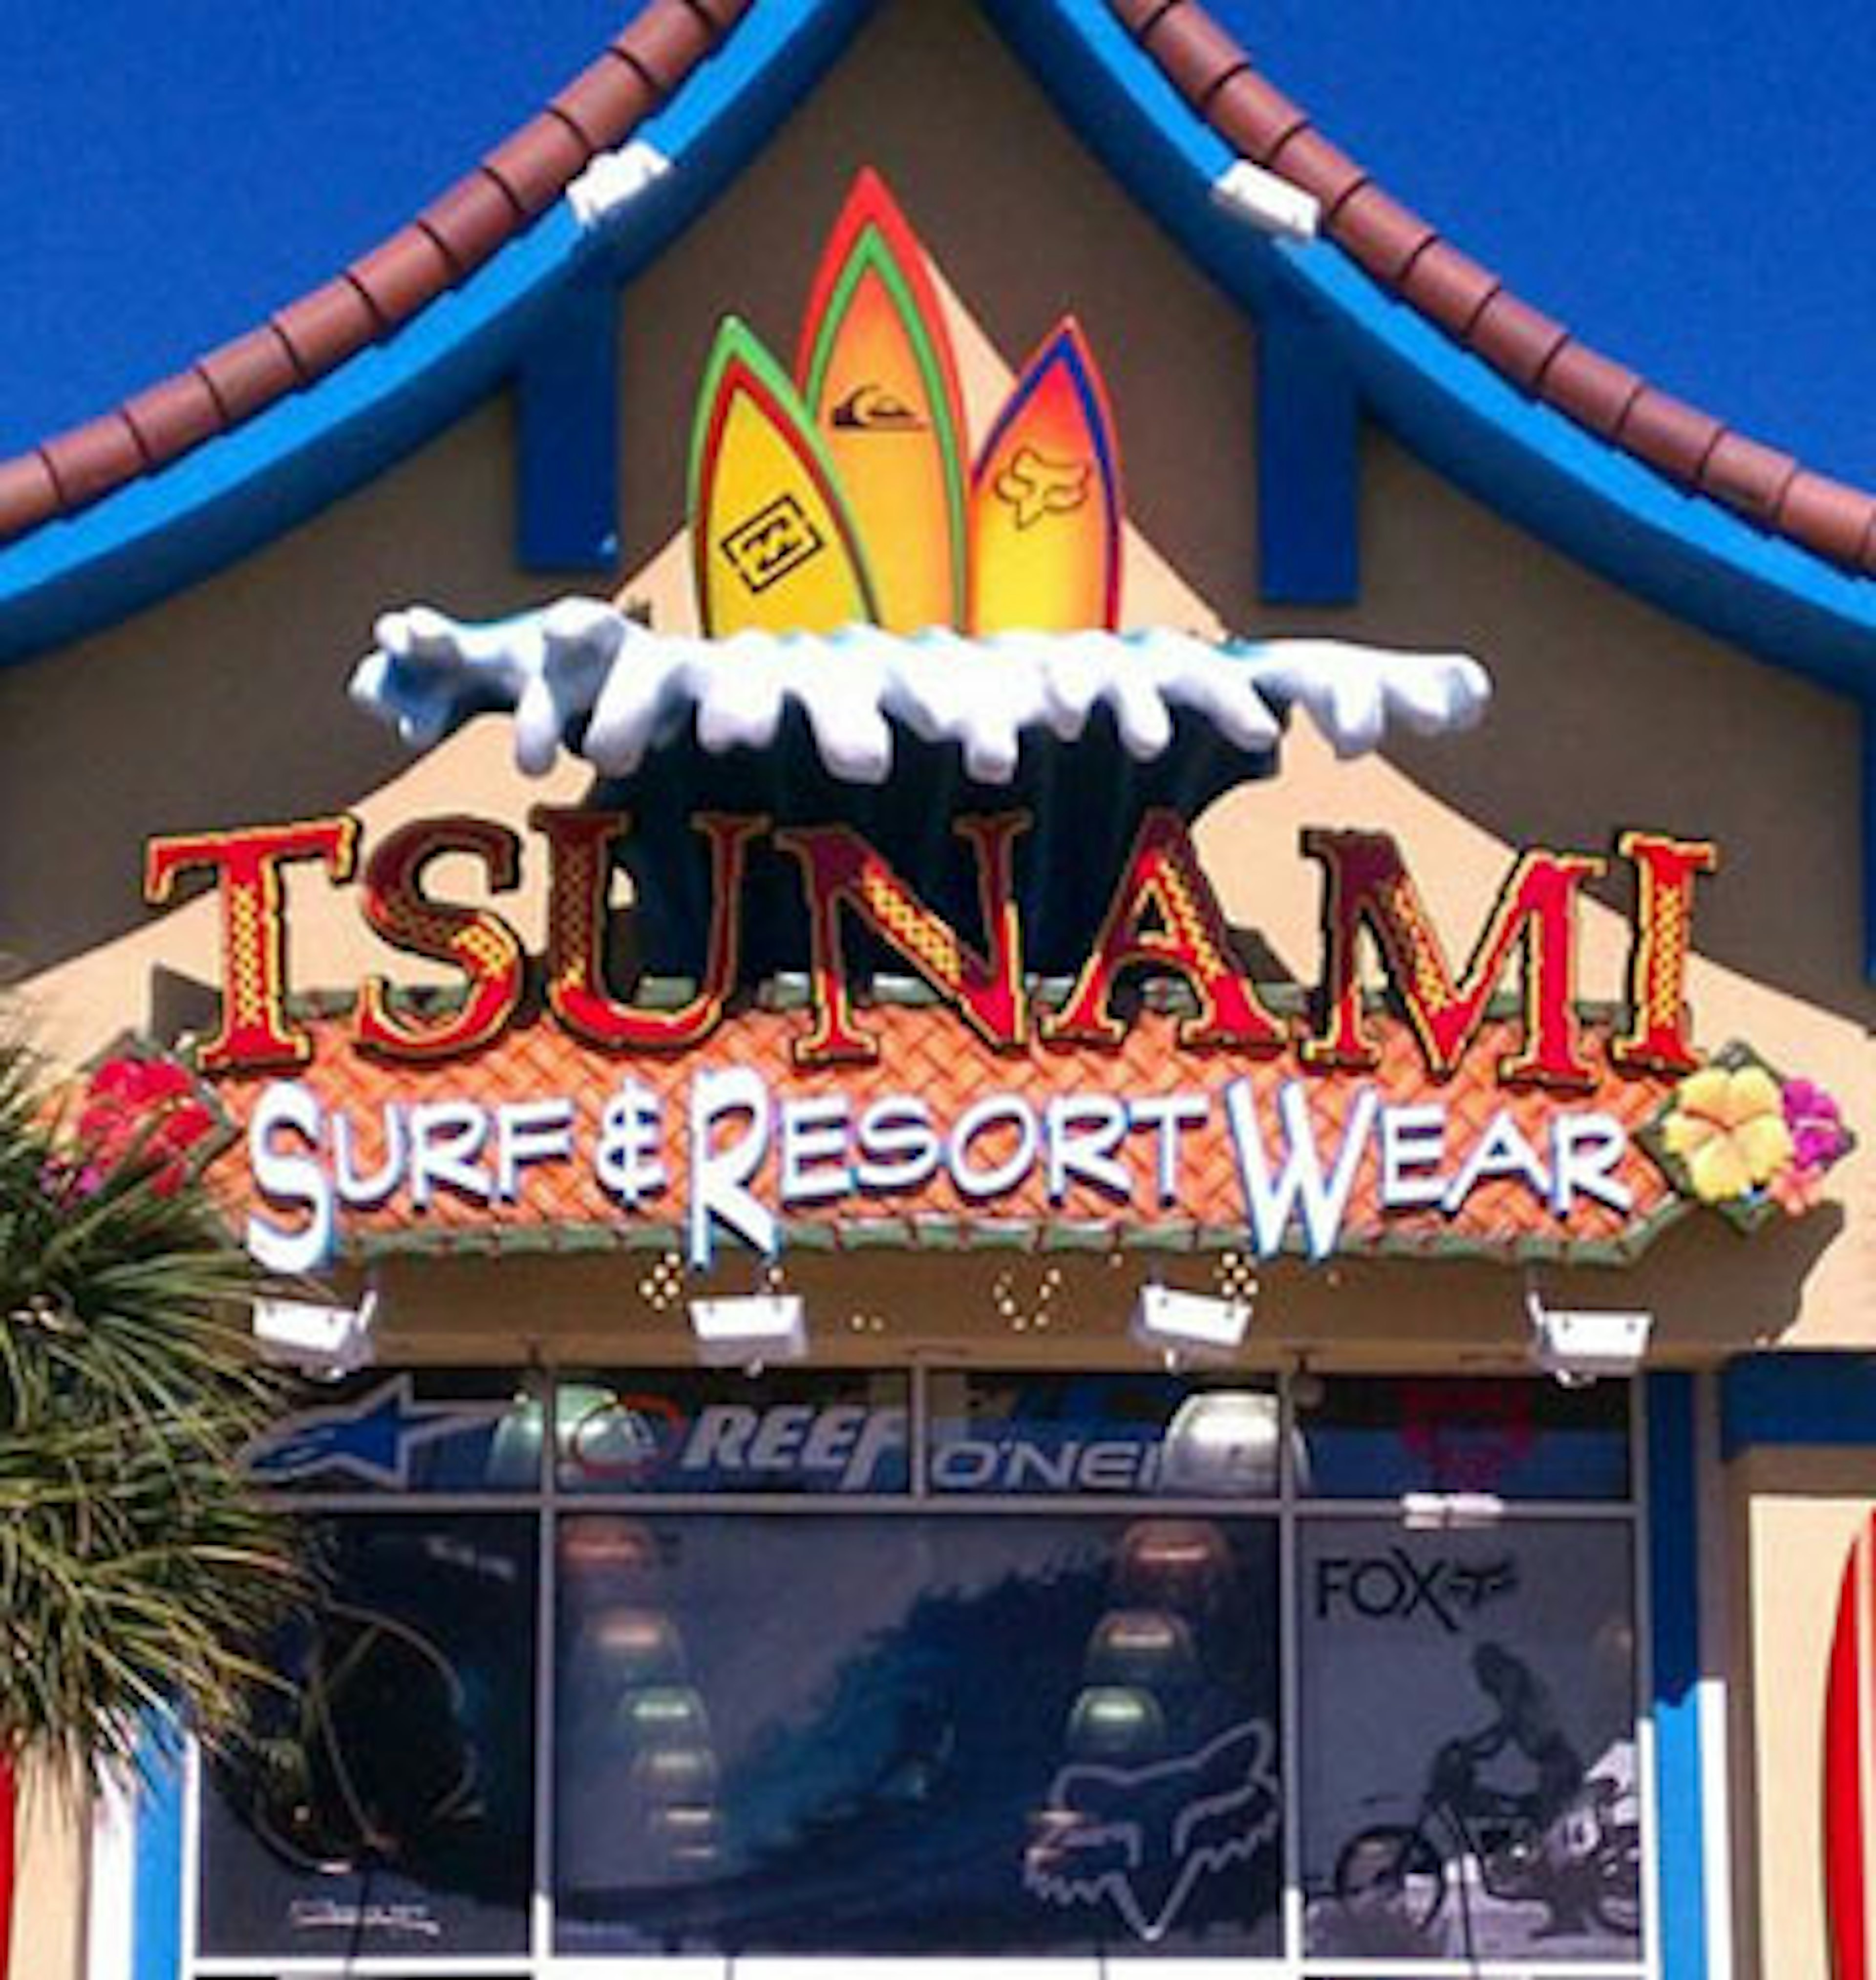 Tsunami Surf Shop